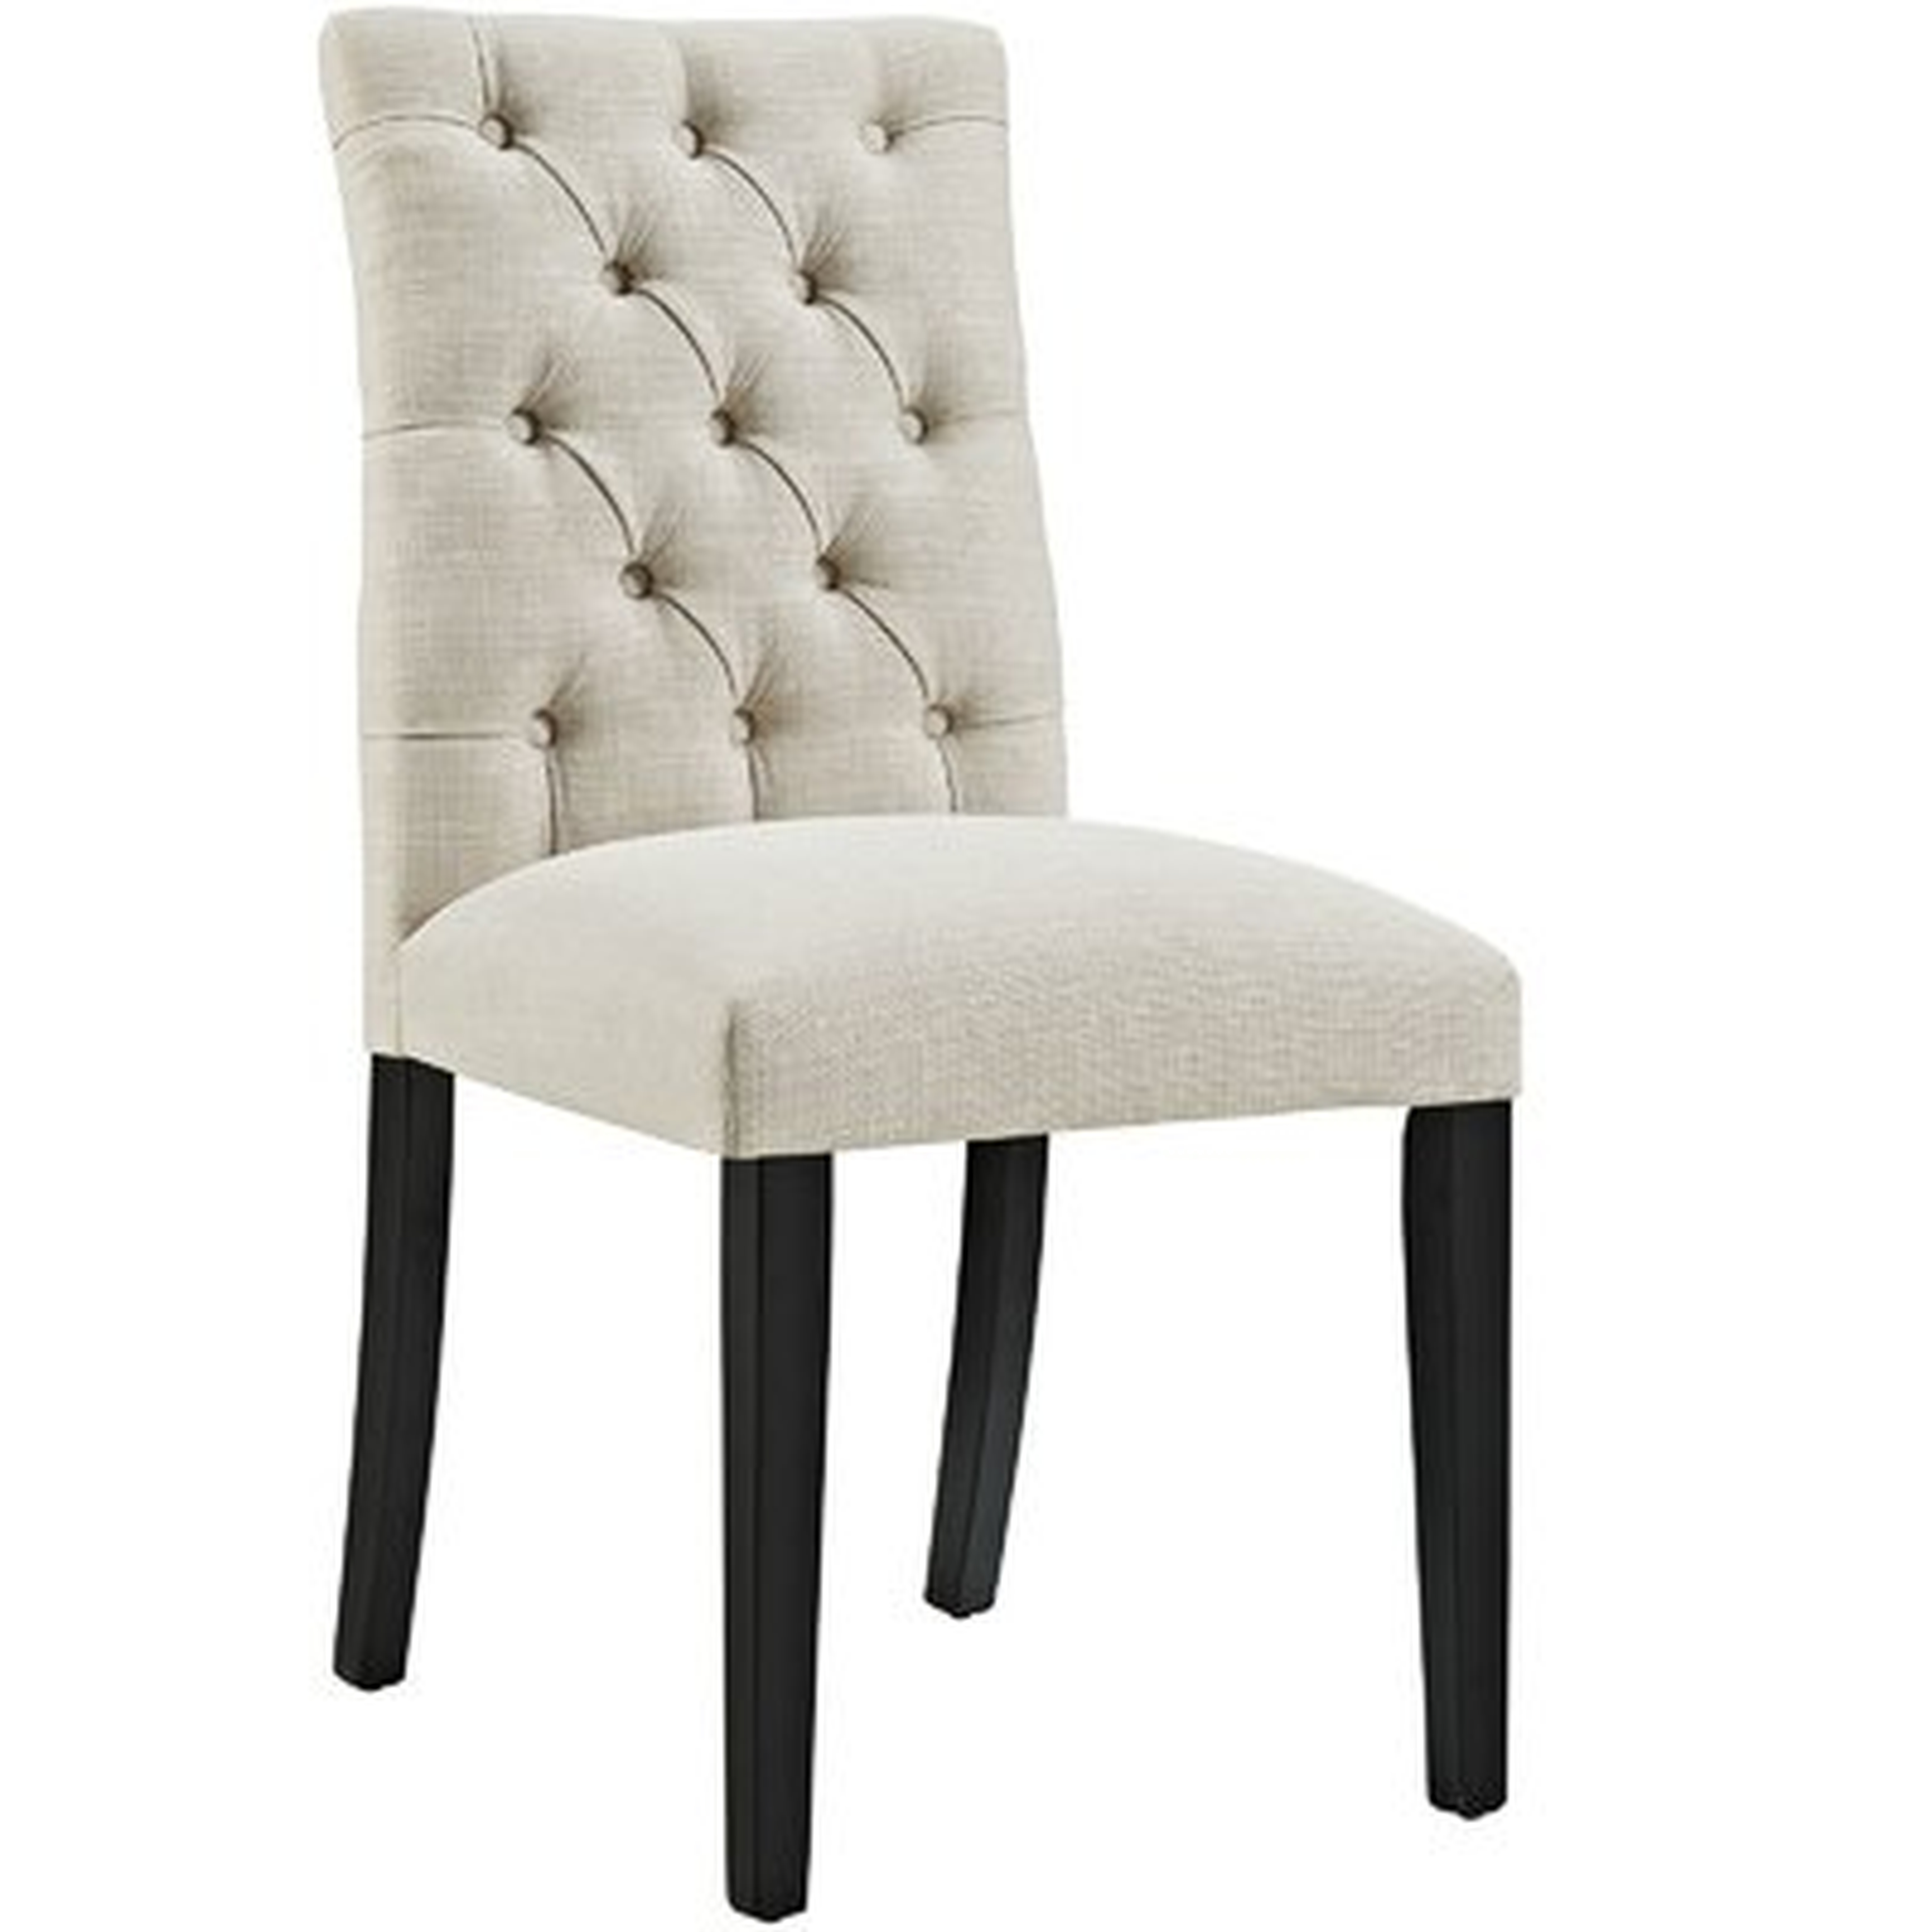 Arcade Duchess Upholstered Dining Chair - Wayfair